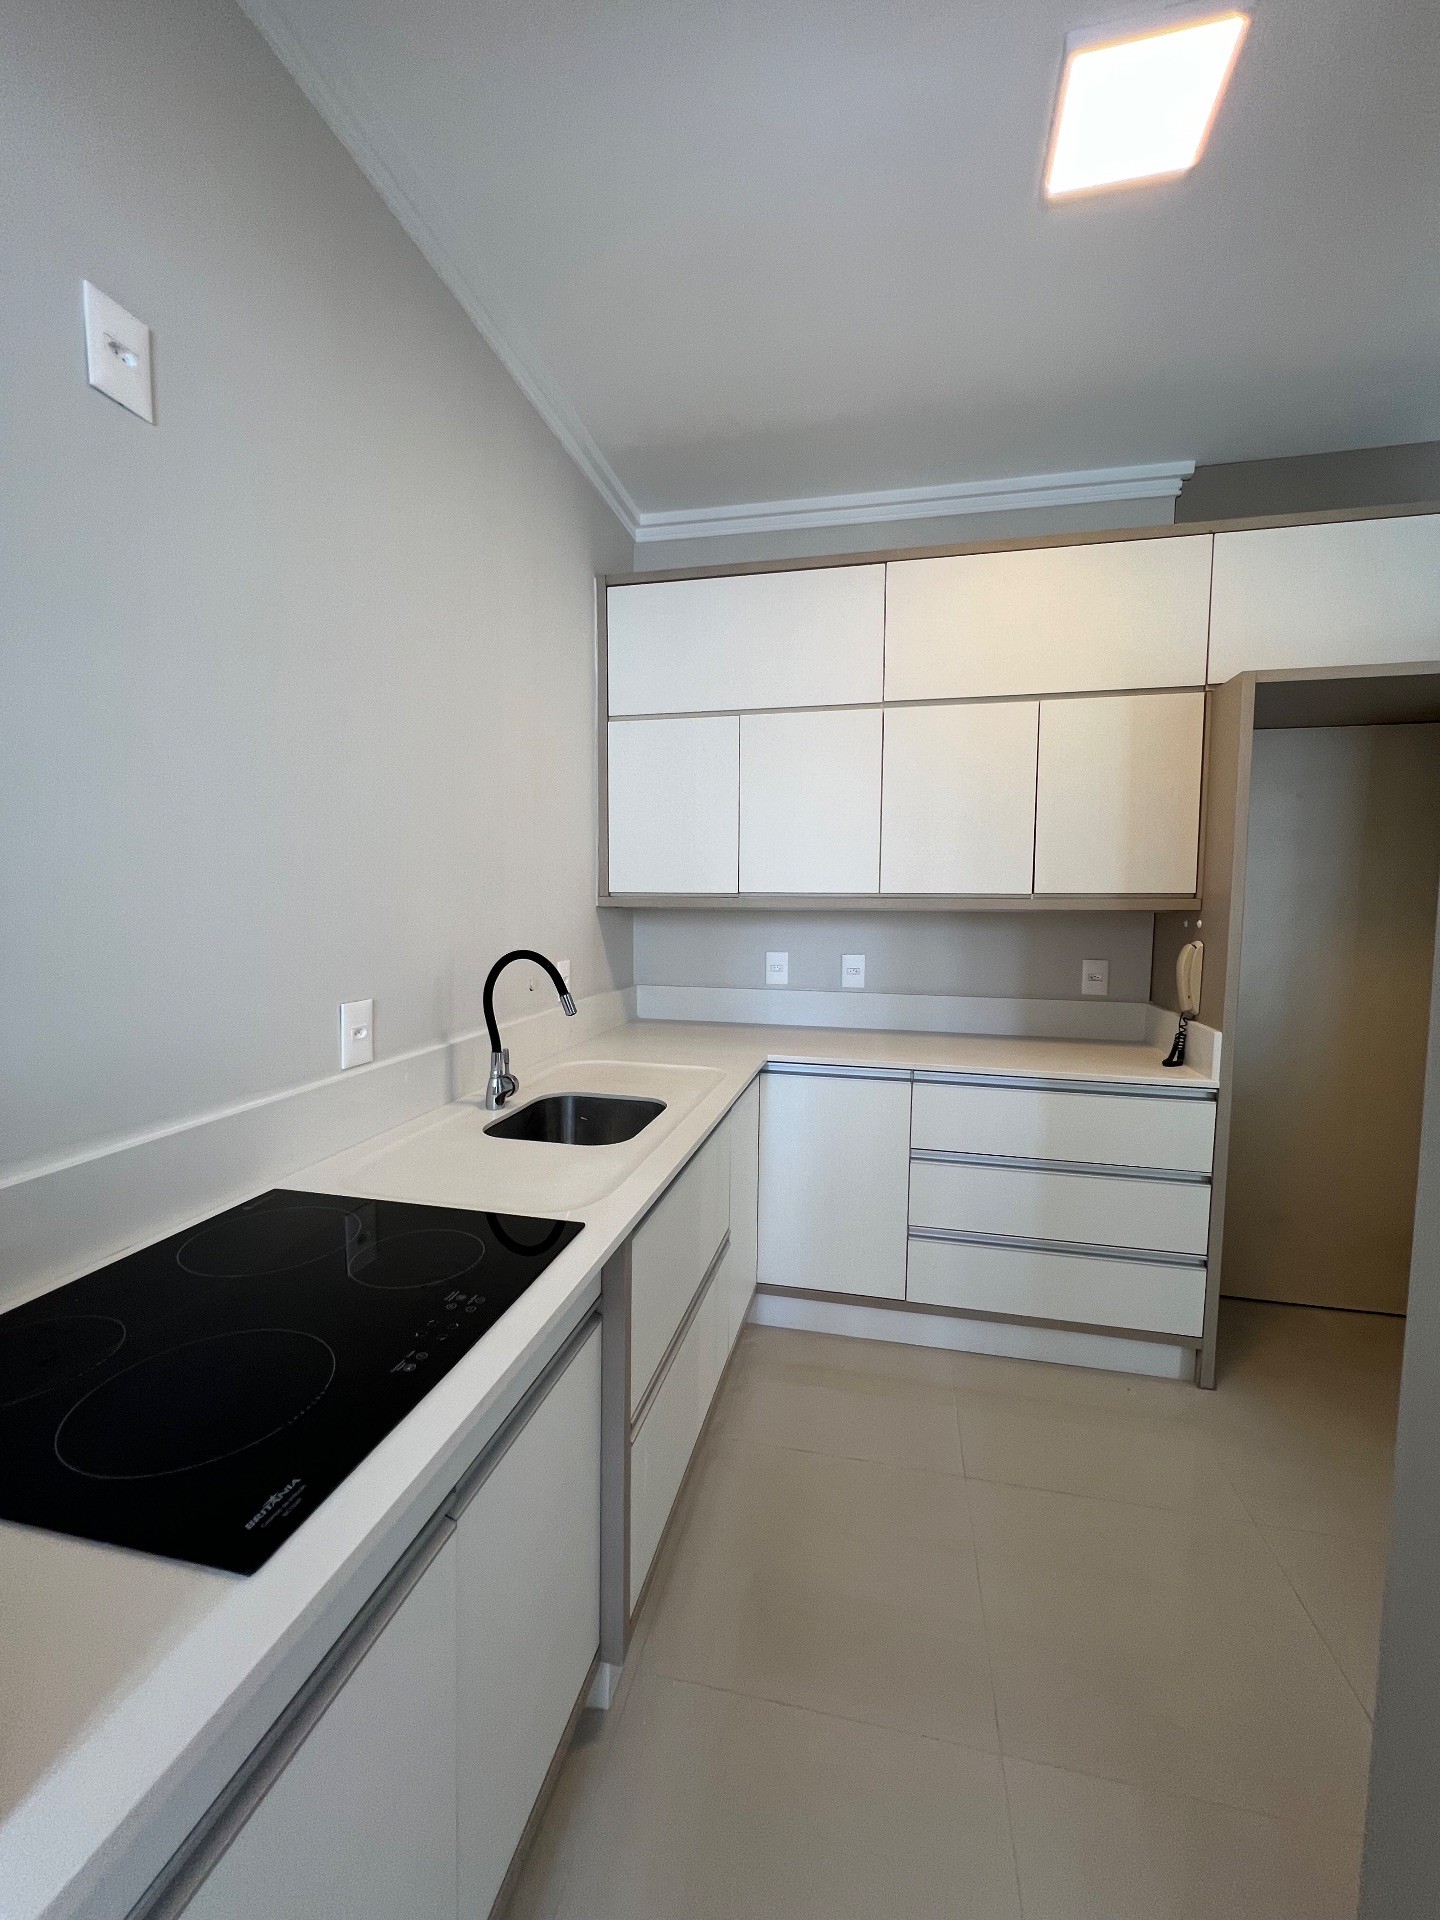 Apartamento Semi Mobiliado com 3 Dormitórios E Varanda Gourmet com Churrasqueira Localizado no Centro de Balneário Camboriú - SC